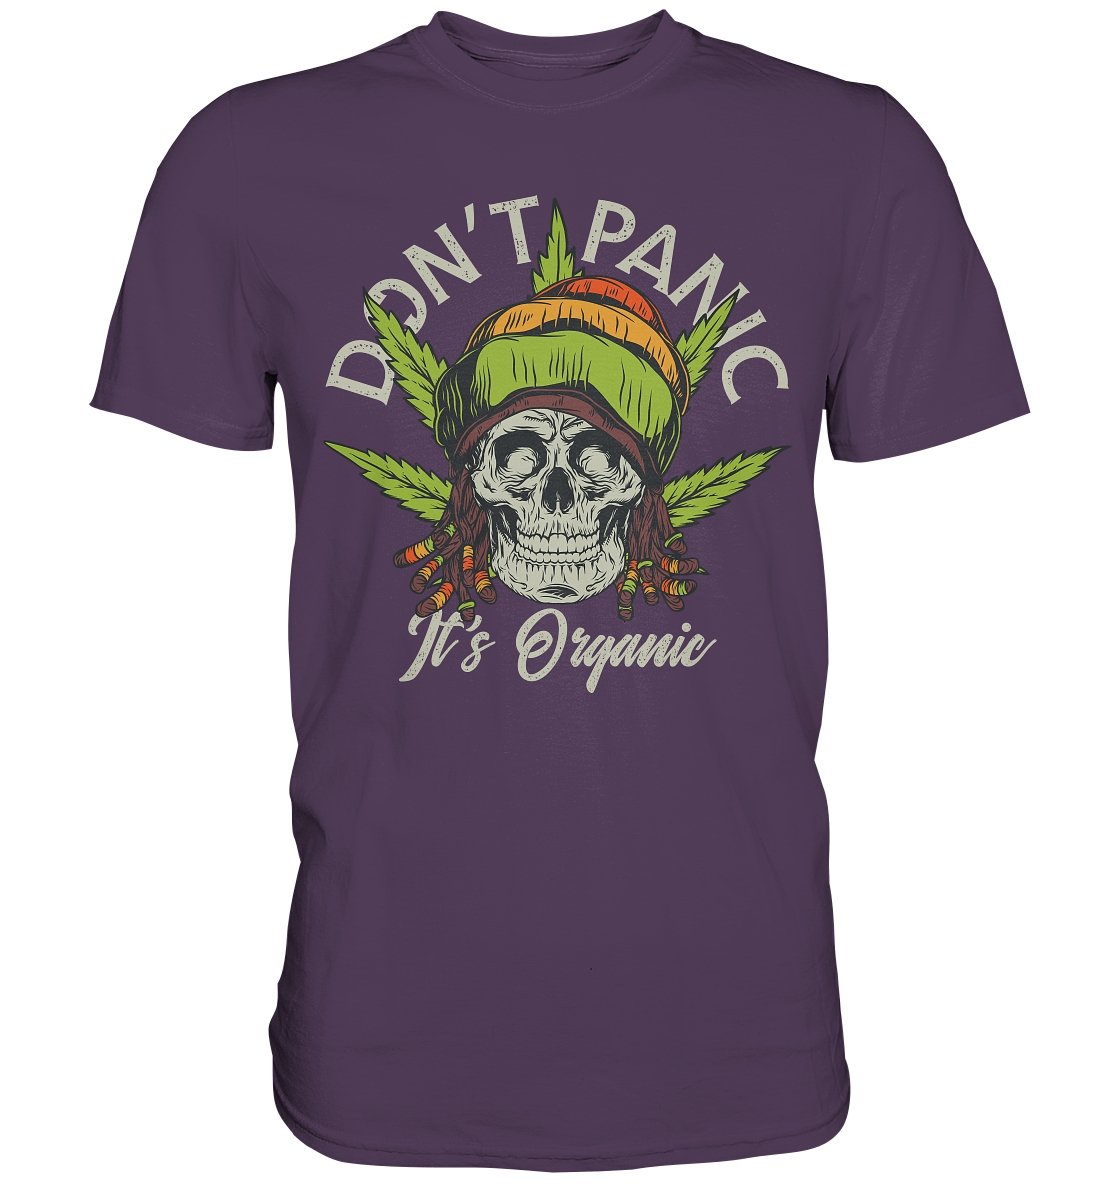 Don't Panic It's Organic - Premium Shirt - BINYA